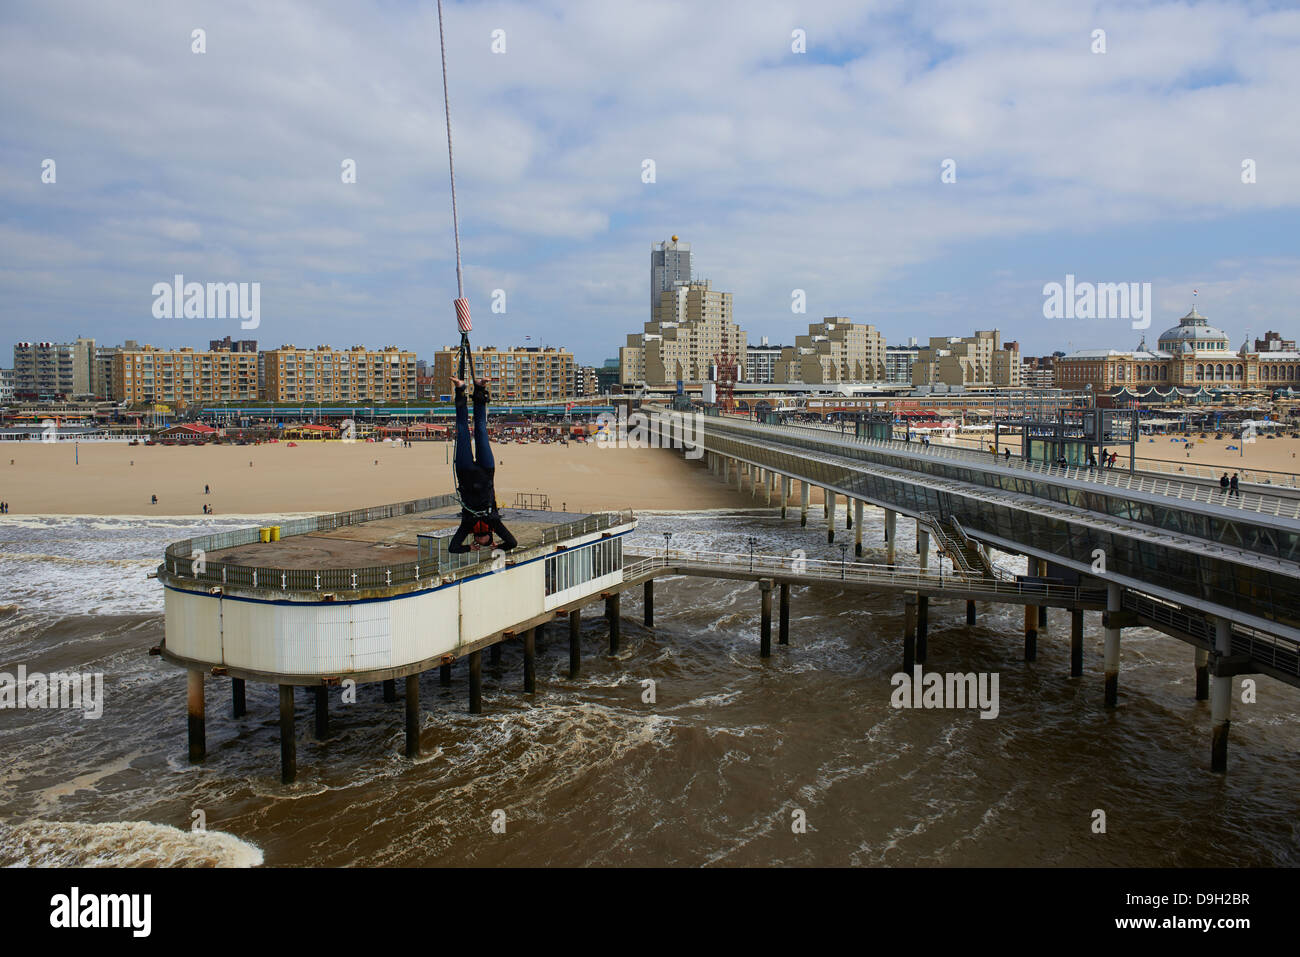 Bungee jumping from the pier, Scheveningen, The Hague (Den Haag), The Netherlands, Europe Stock Photo